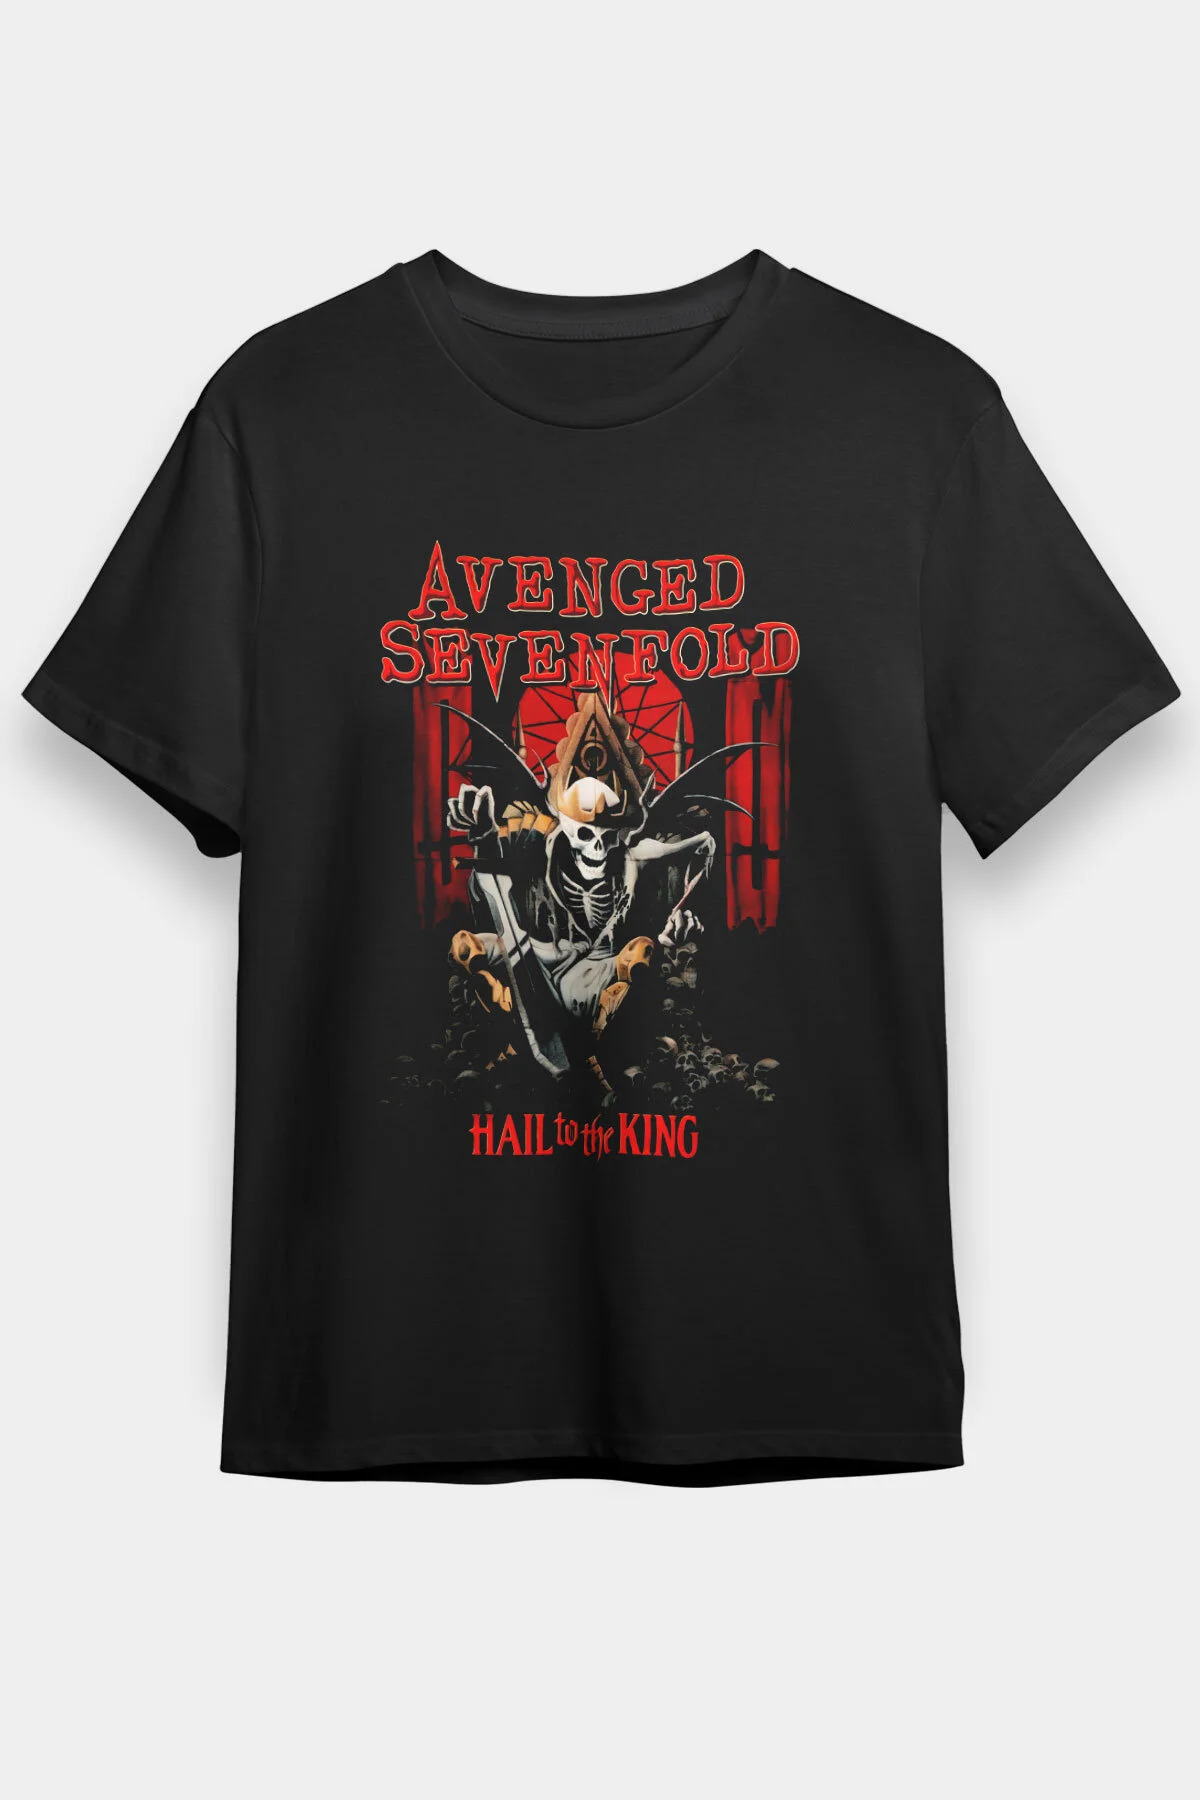 Avenged Sevenfold ,Music Band ,Unisex Tshirt 35